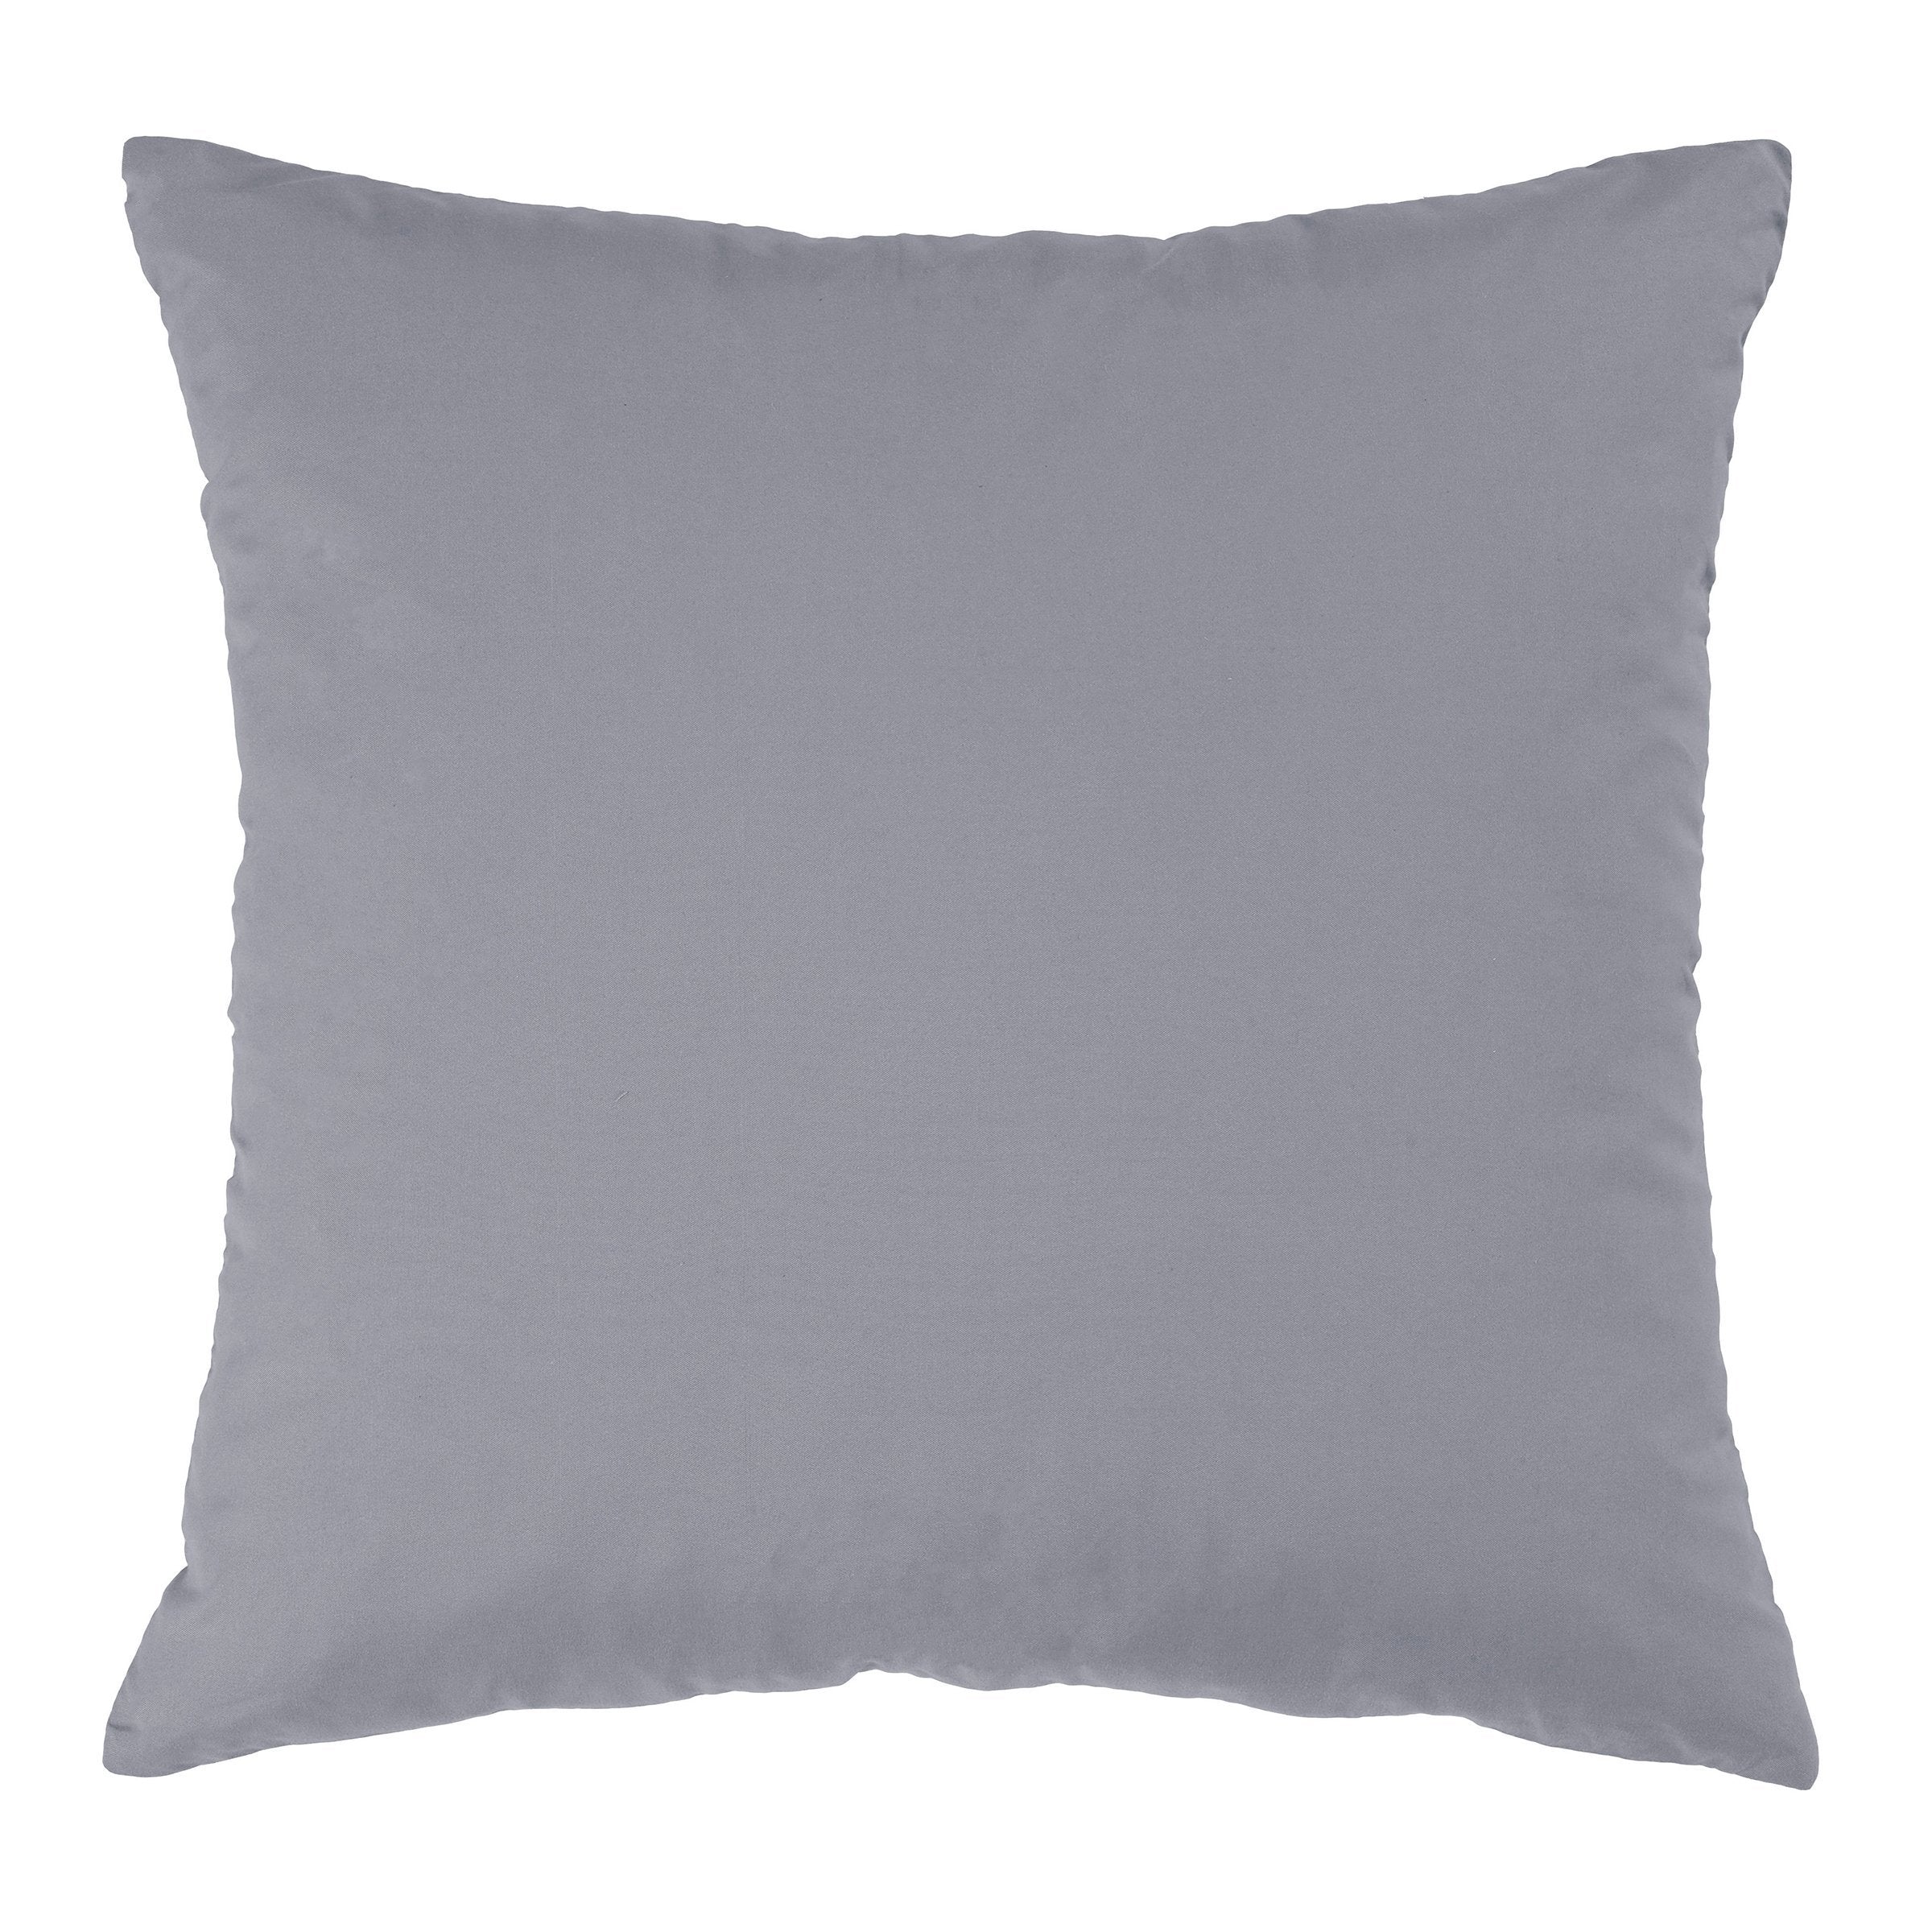 Vista Soft Decorative Throw Pillow 16" x 16" Throw Pillows By Donna Sharp